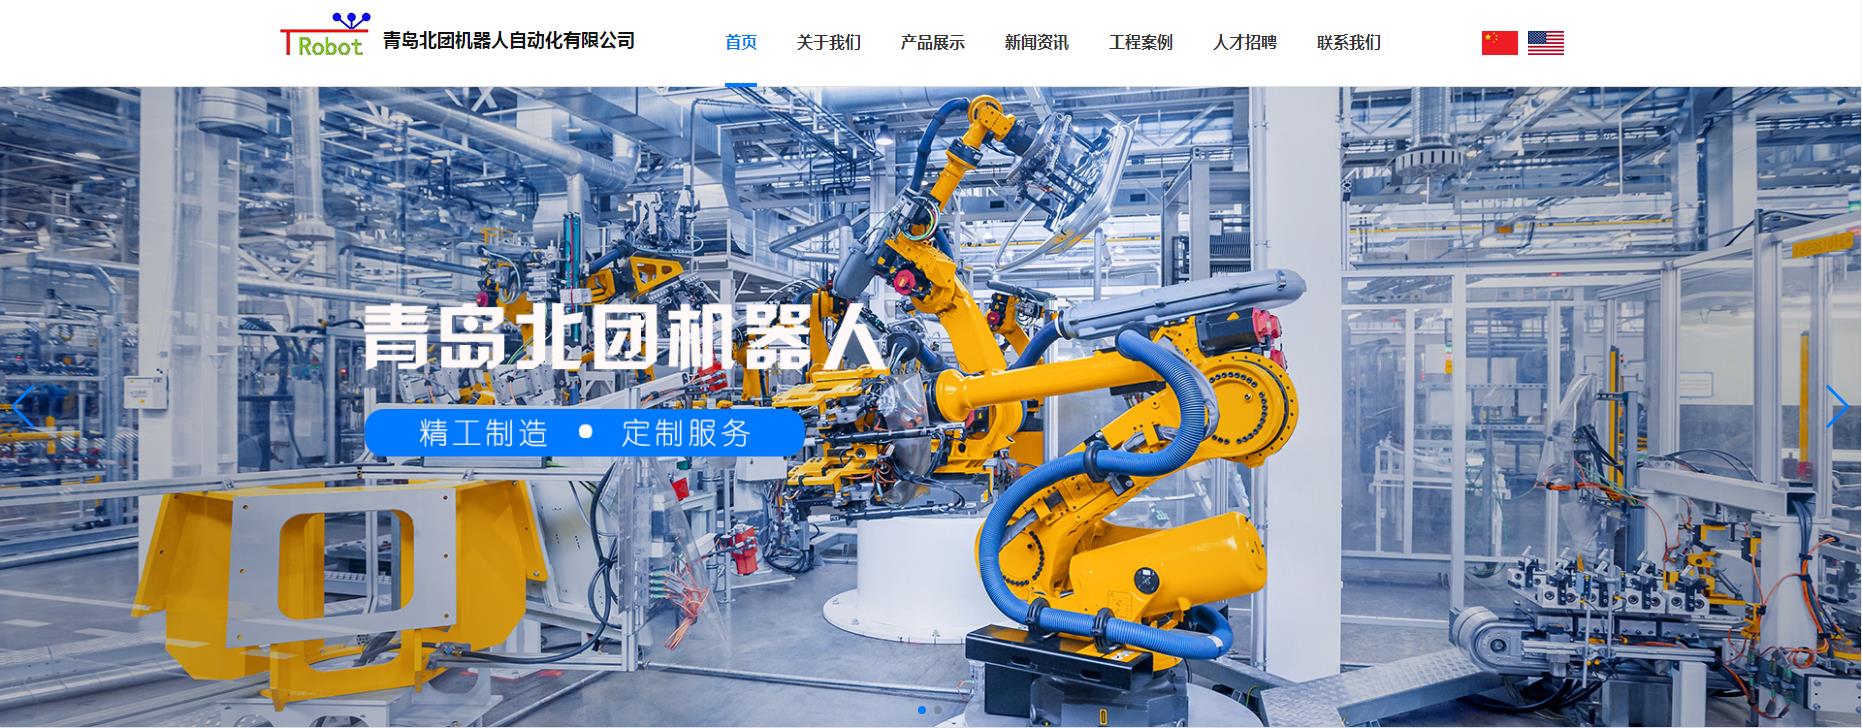 青岛北团机器人自动化有限公司